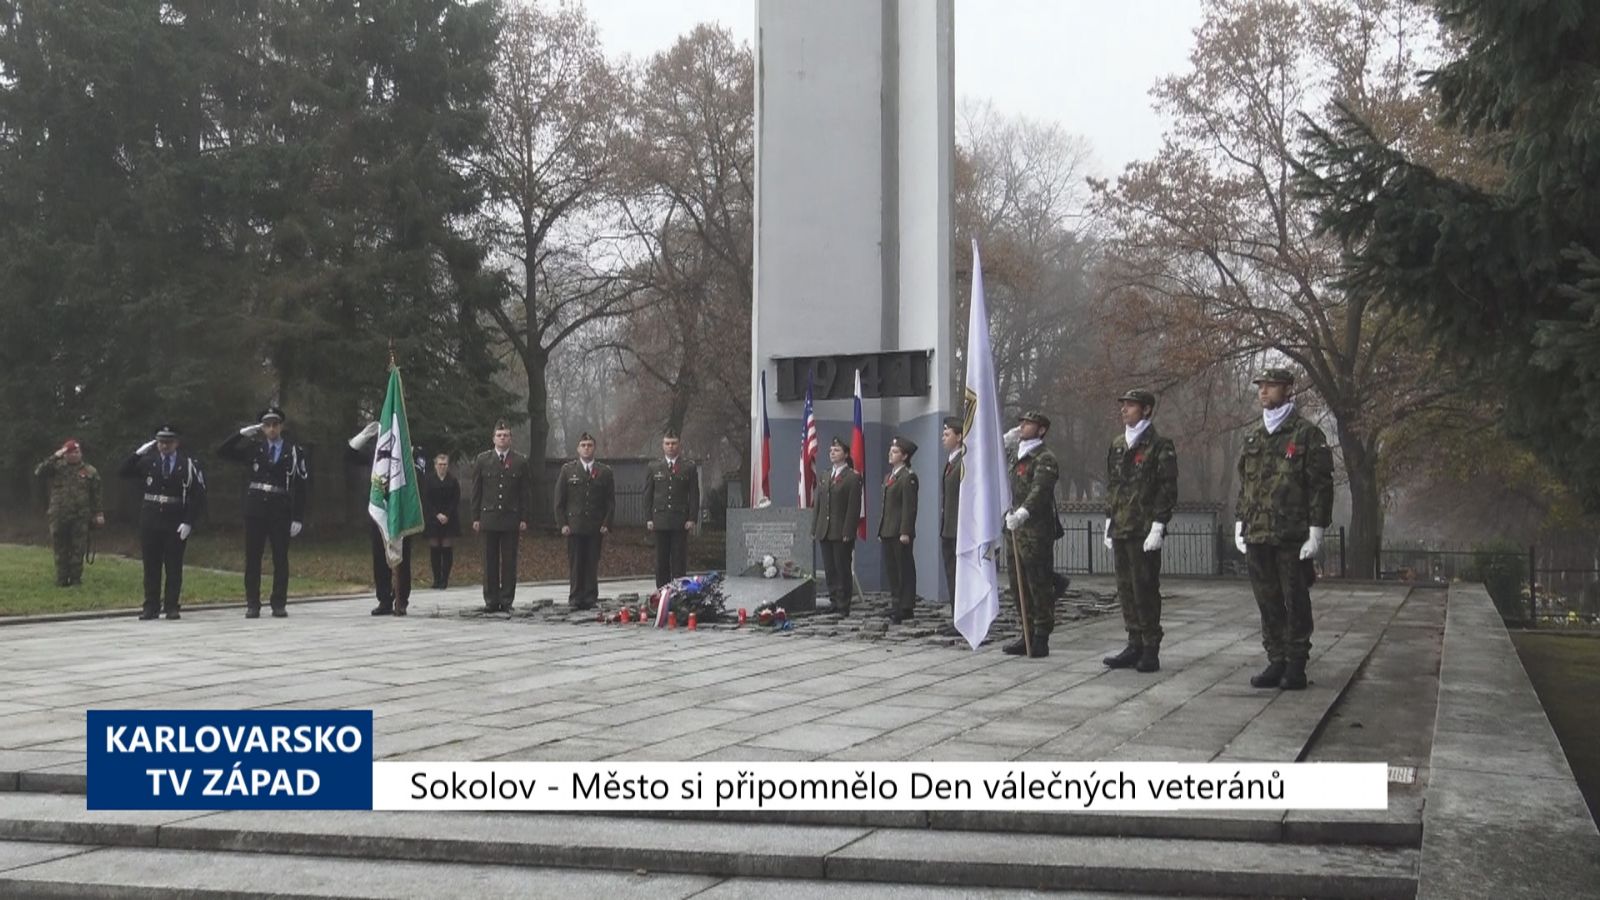 Sokolov: Město si připomnělo Den válečných veteránů (TV Západ)